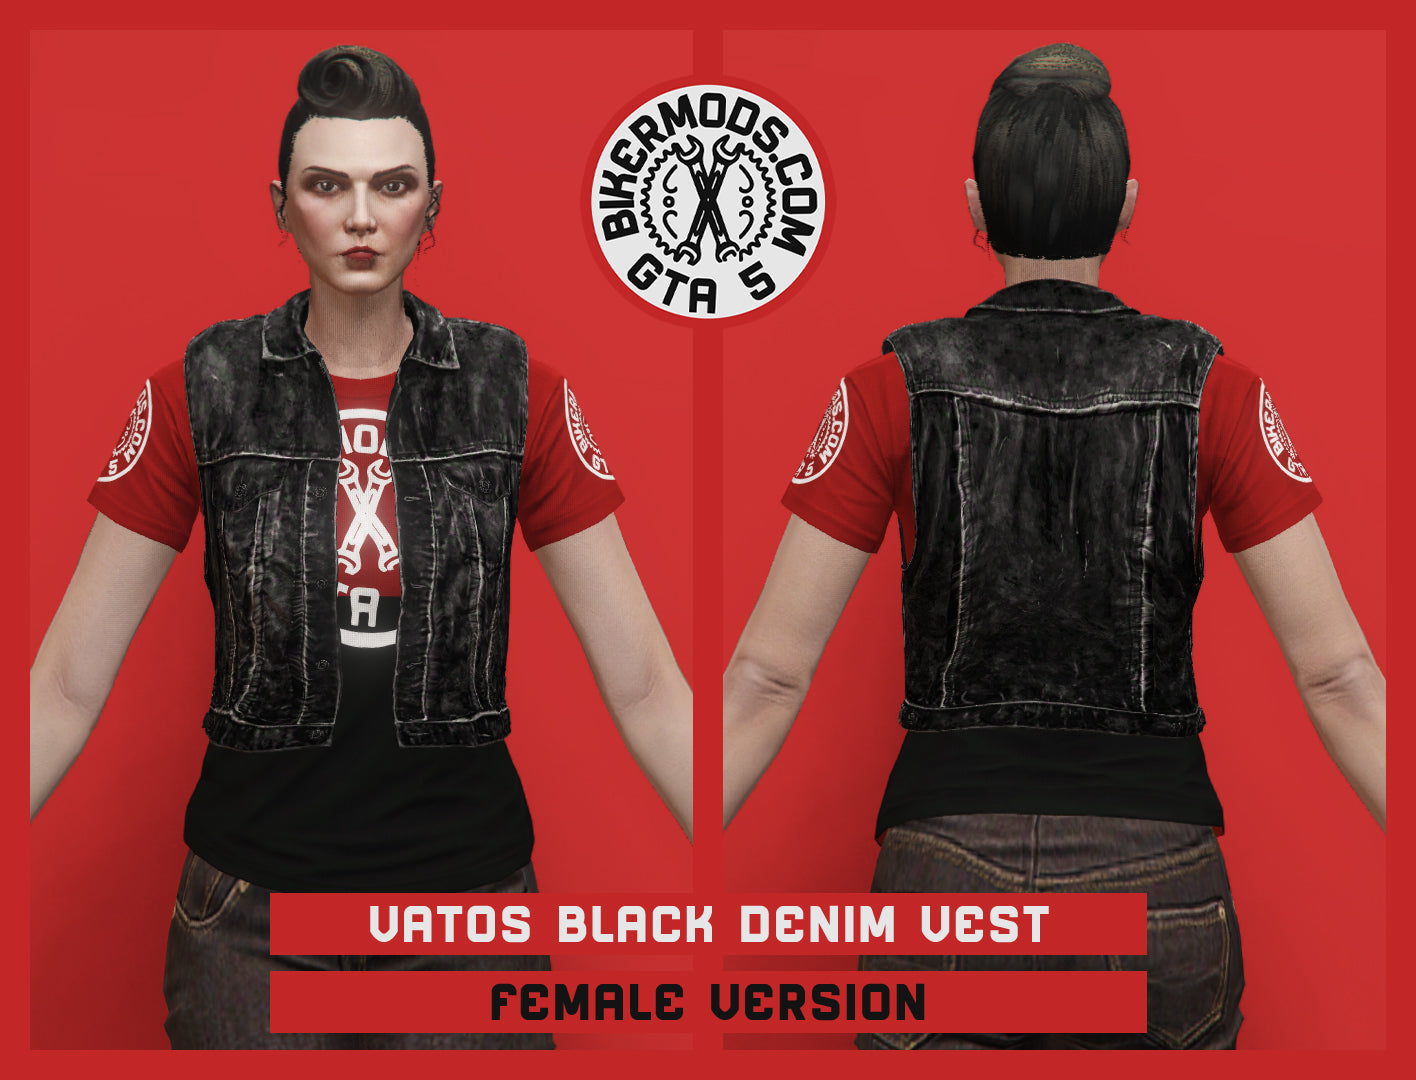 Vatos Black Denim Vest (Female)